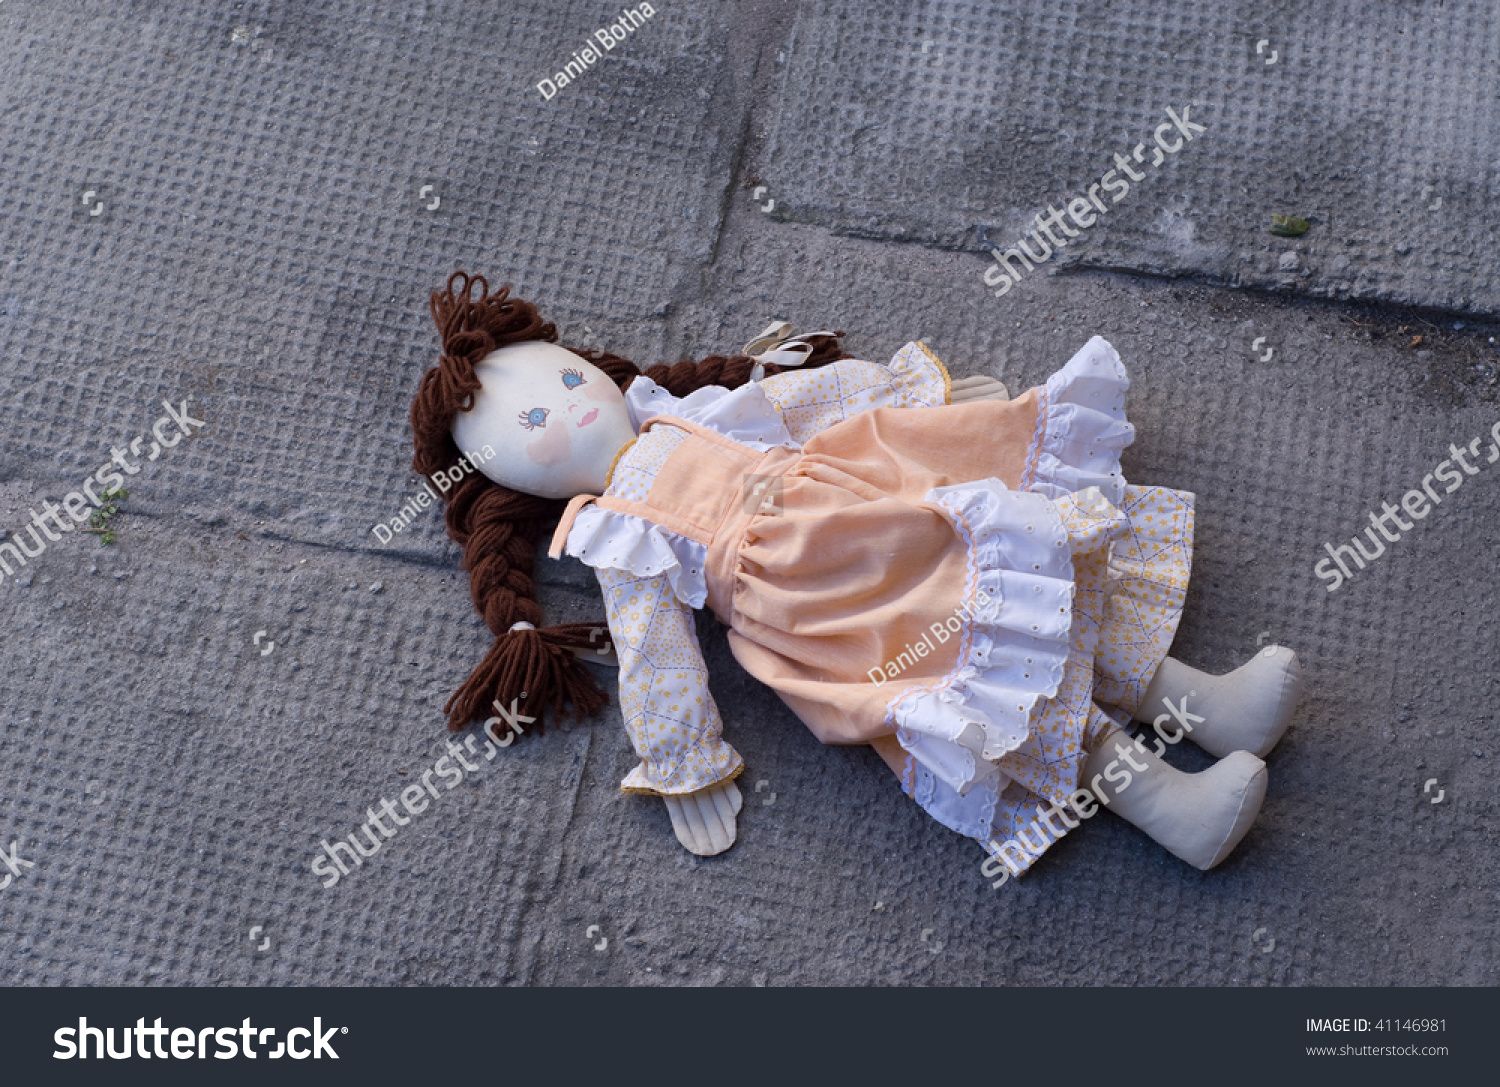 stock-photo-abandoned-rag-doll-left-in-the-dirt-41146981.jpg